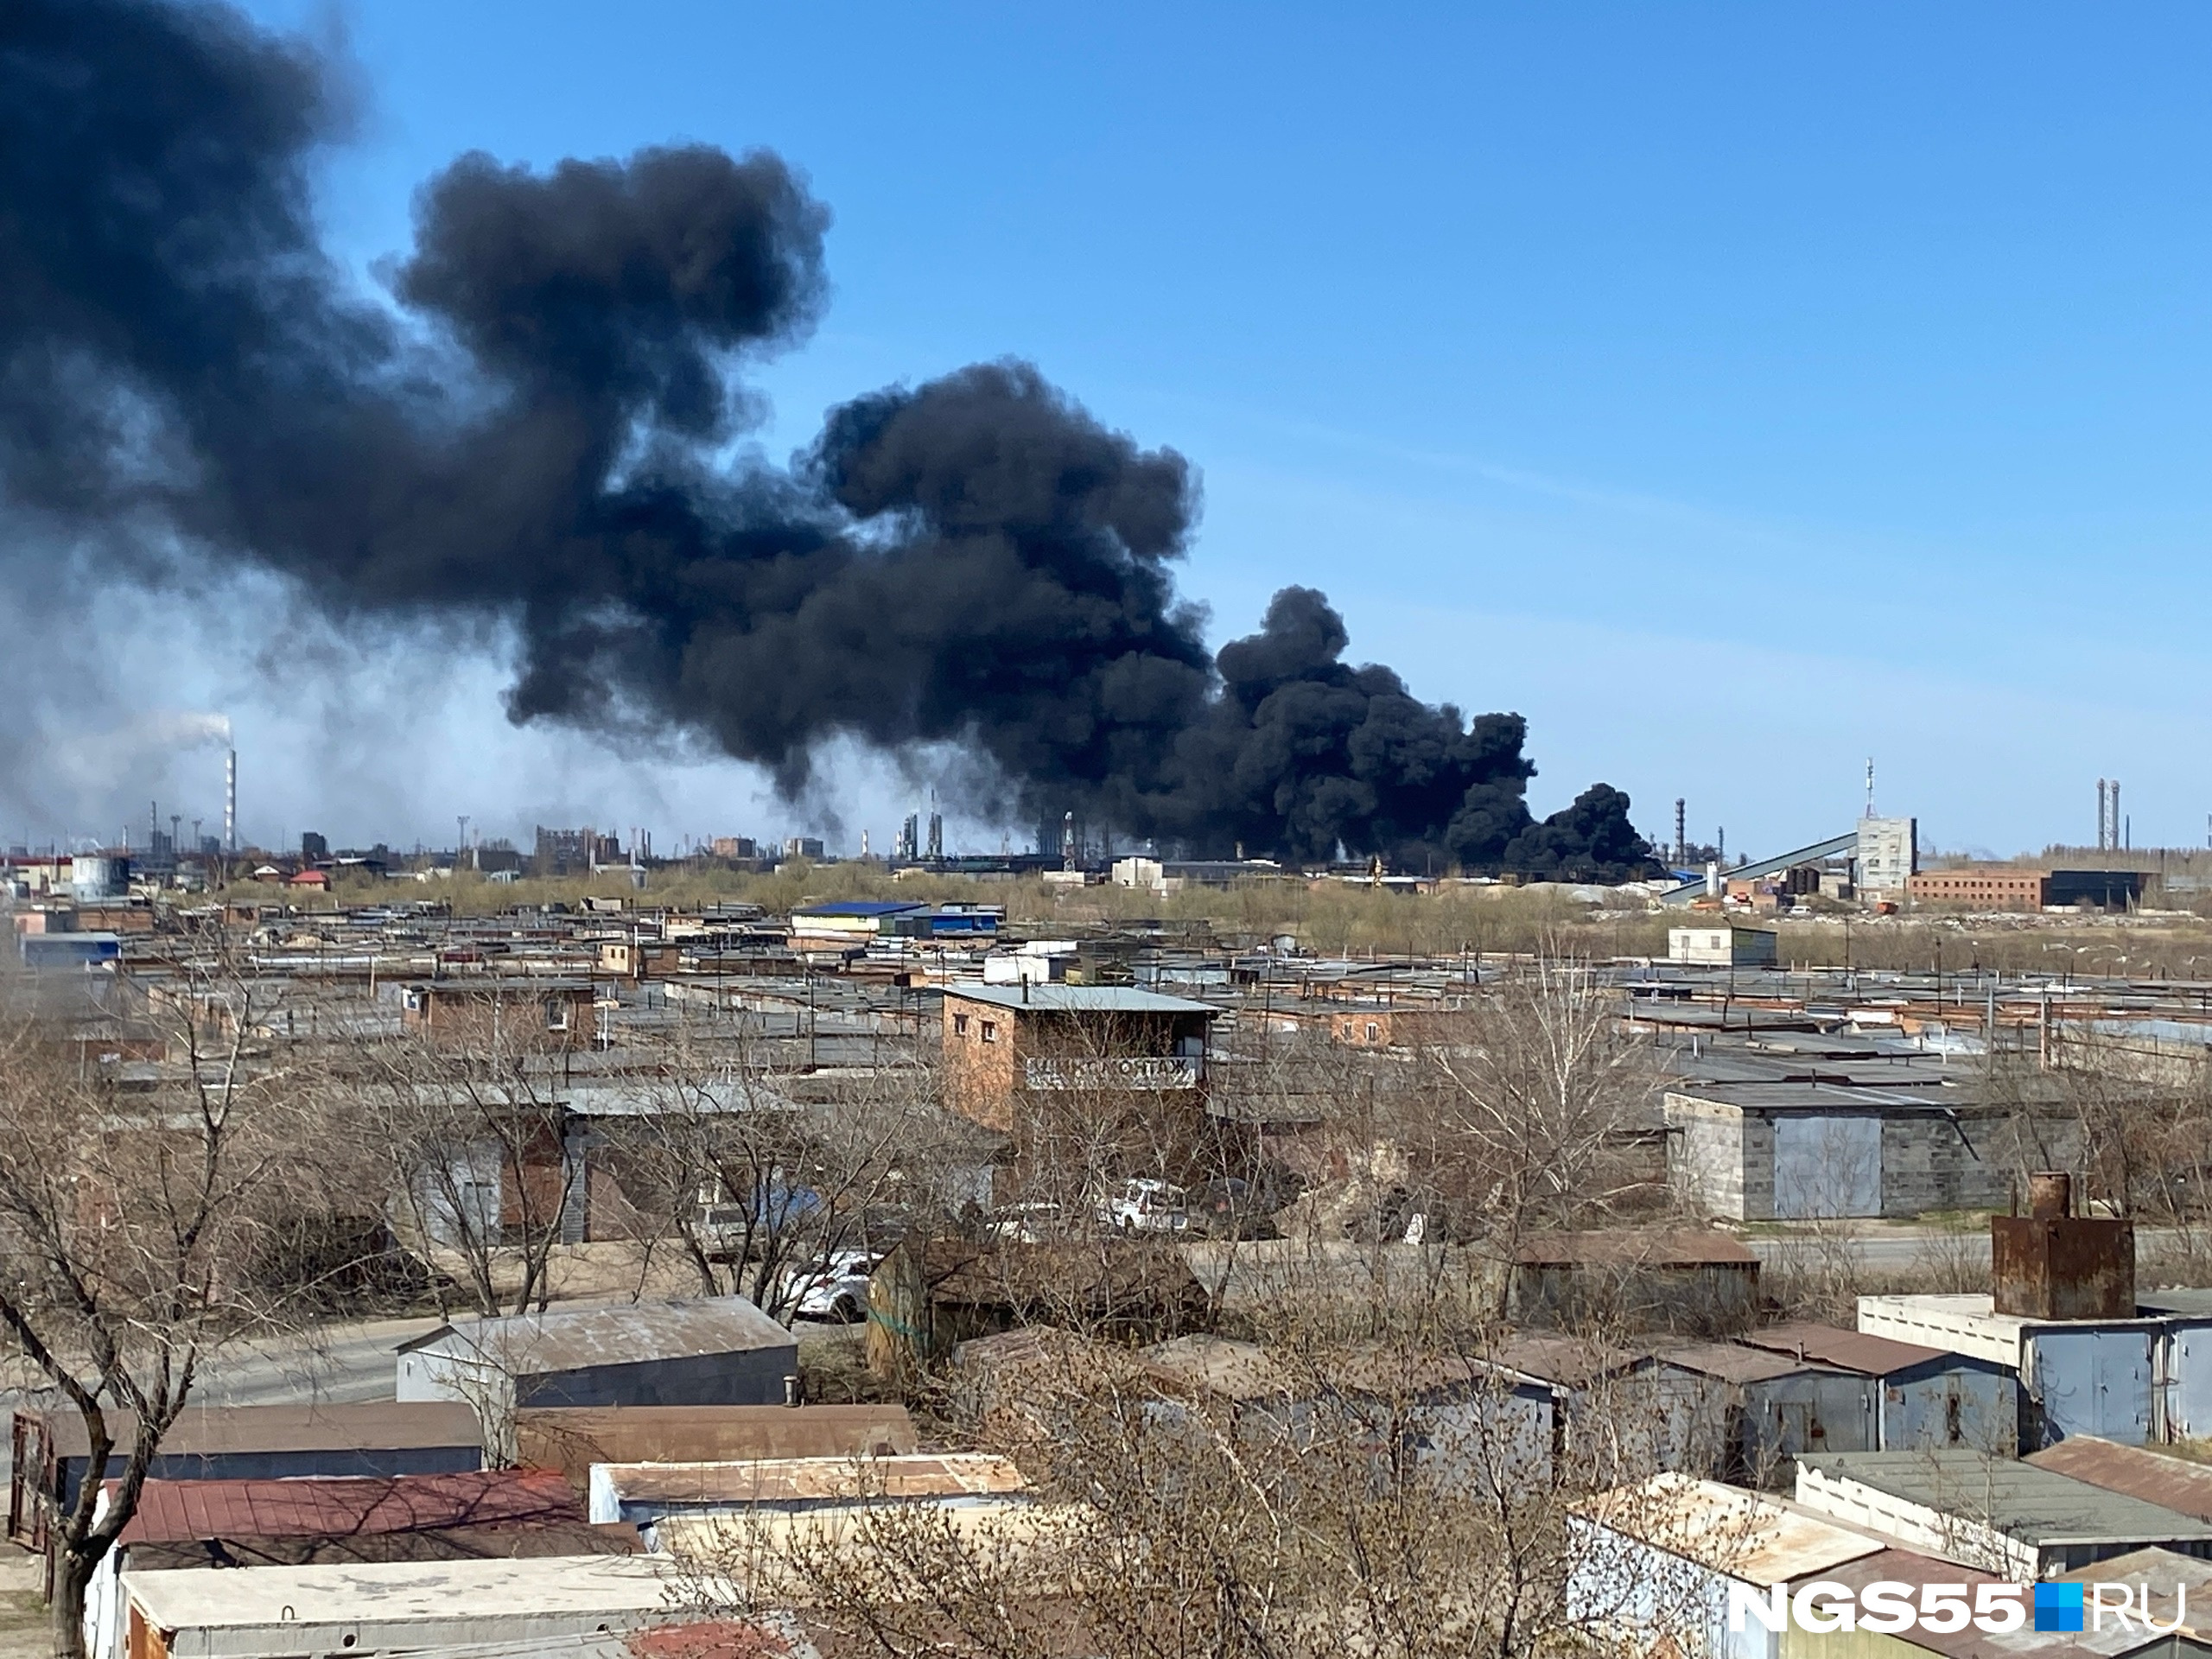 В Омске горят емкости с нефтепродуктами: онлайн-трансляция